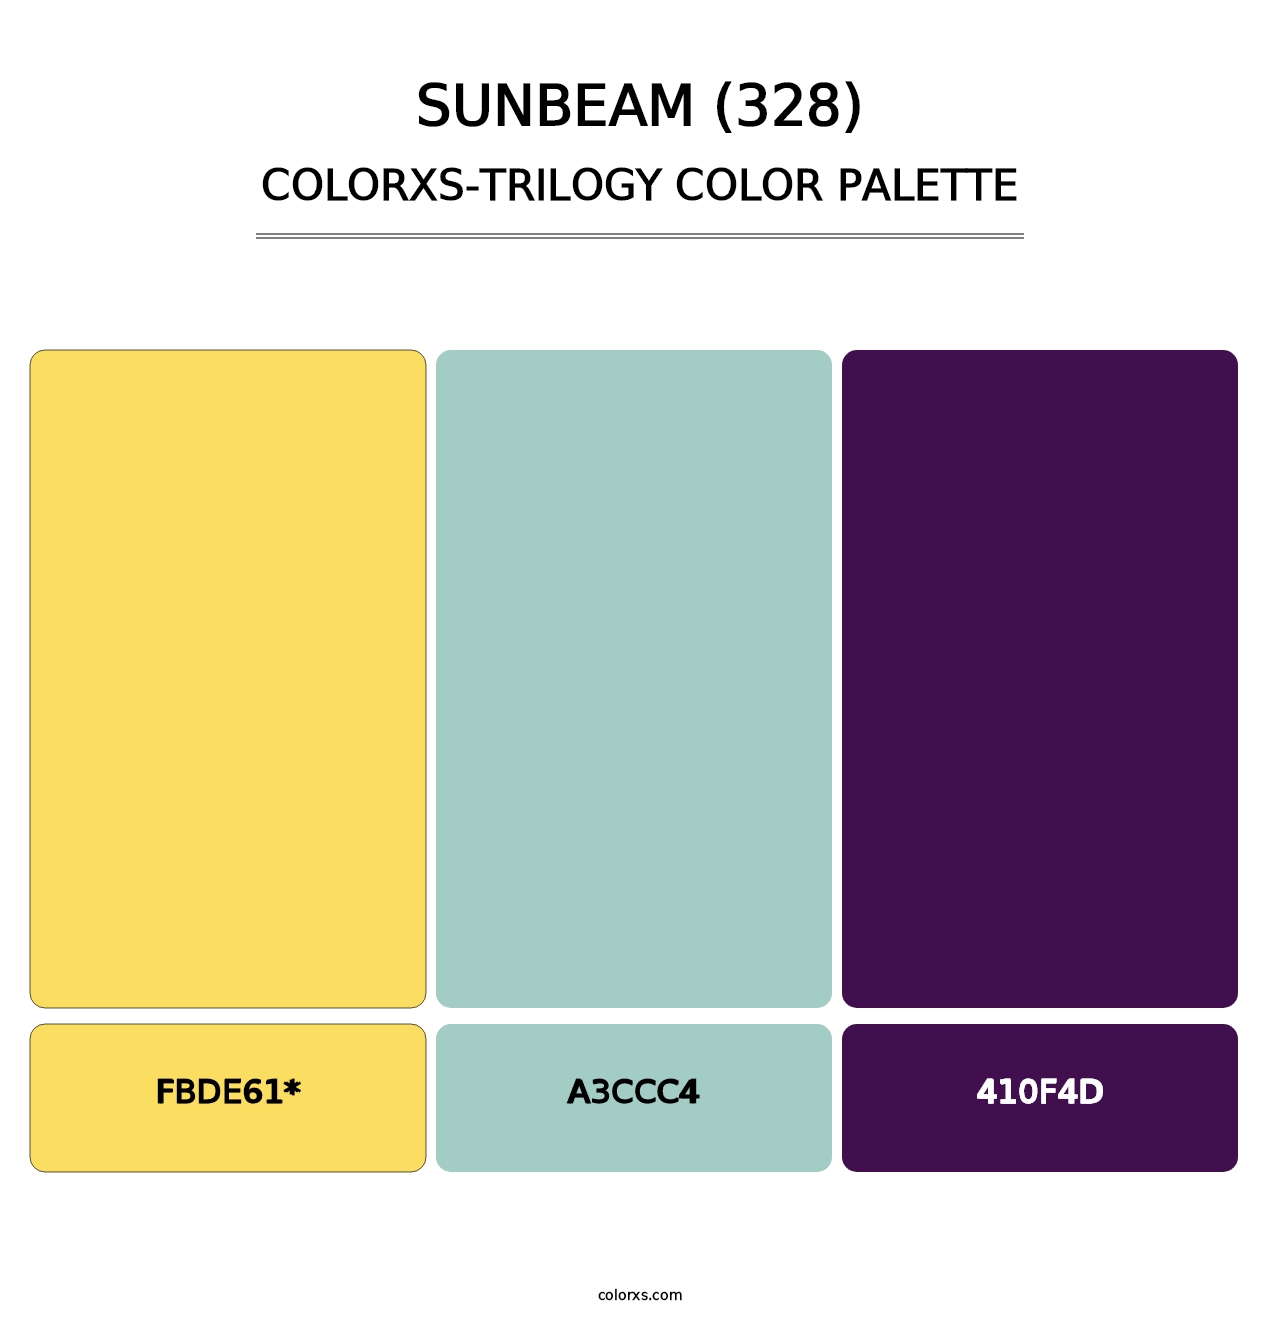 Sunbeam (328) - Colorxs Trilogy Palette